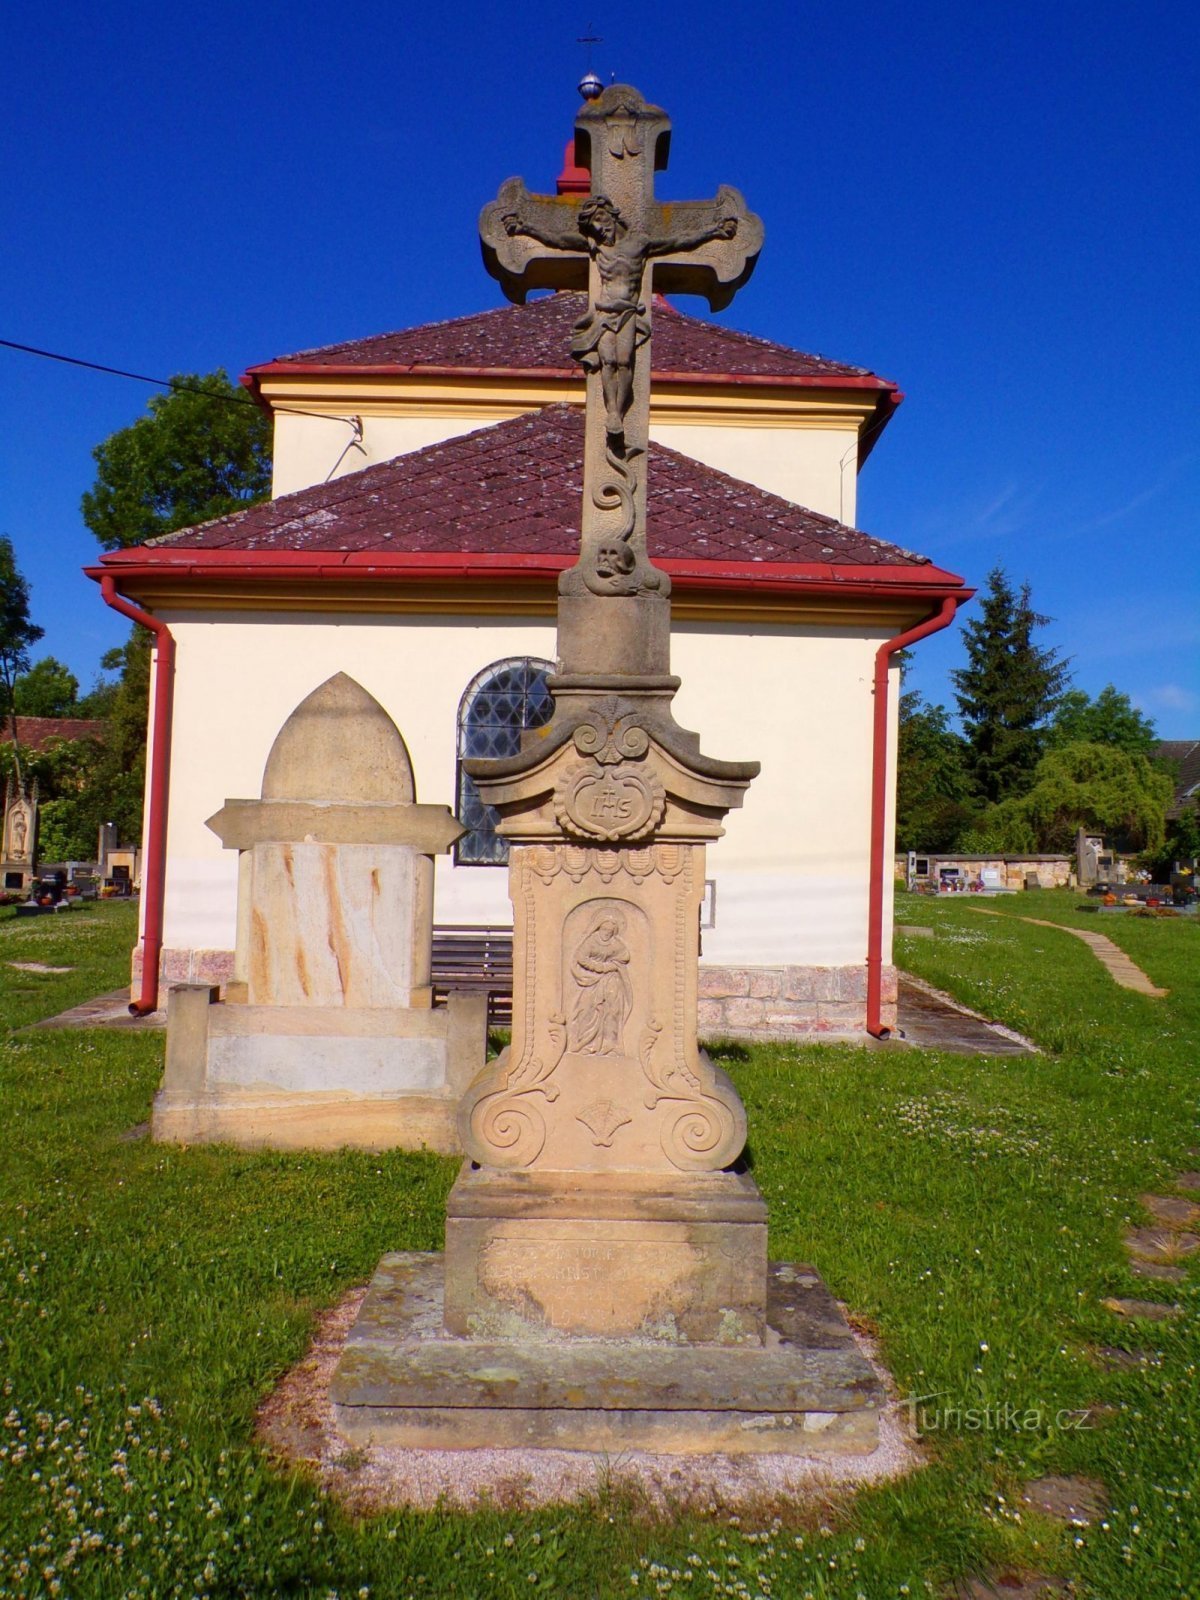 Croce presso la chiesa di S. Nicola, vescovo (Choteč, 31.5.2022)